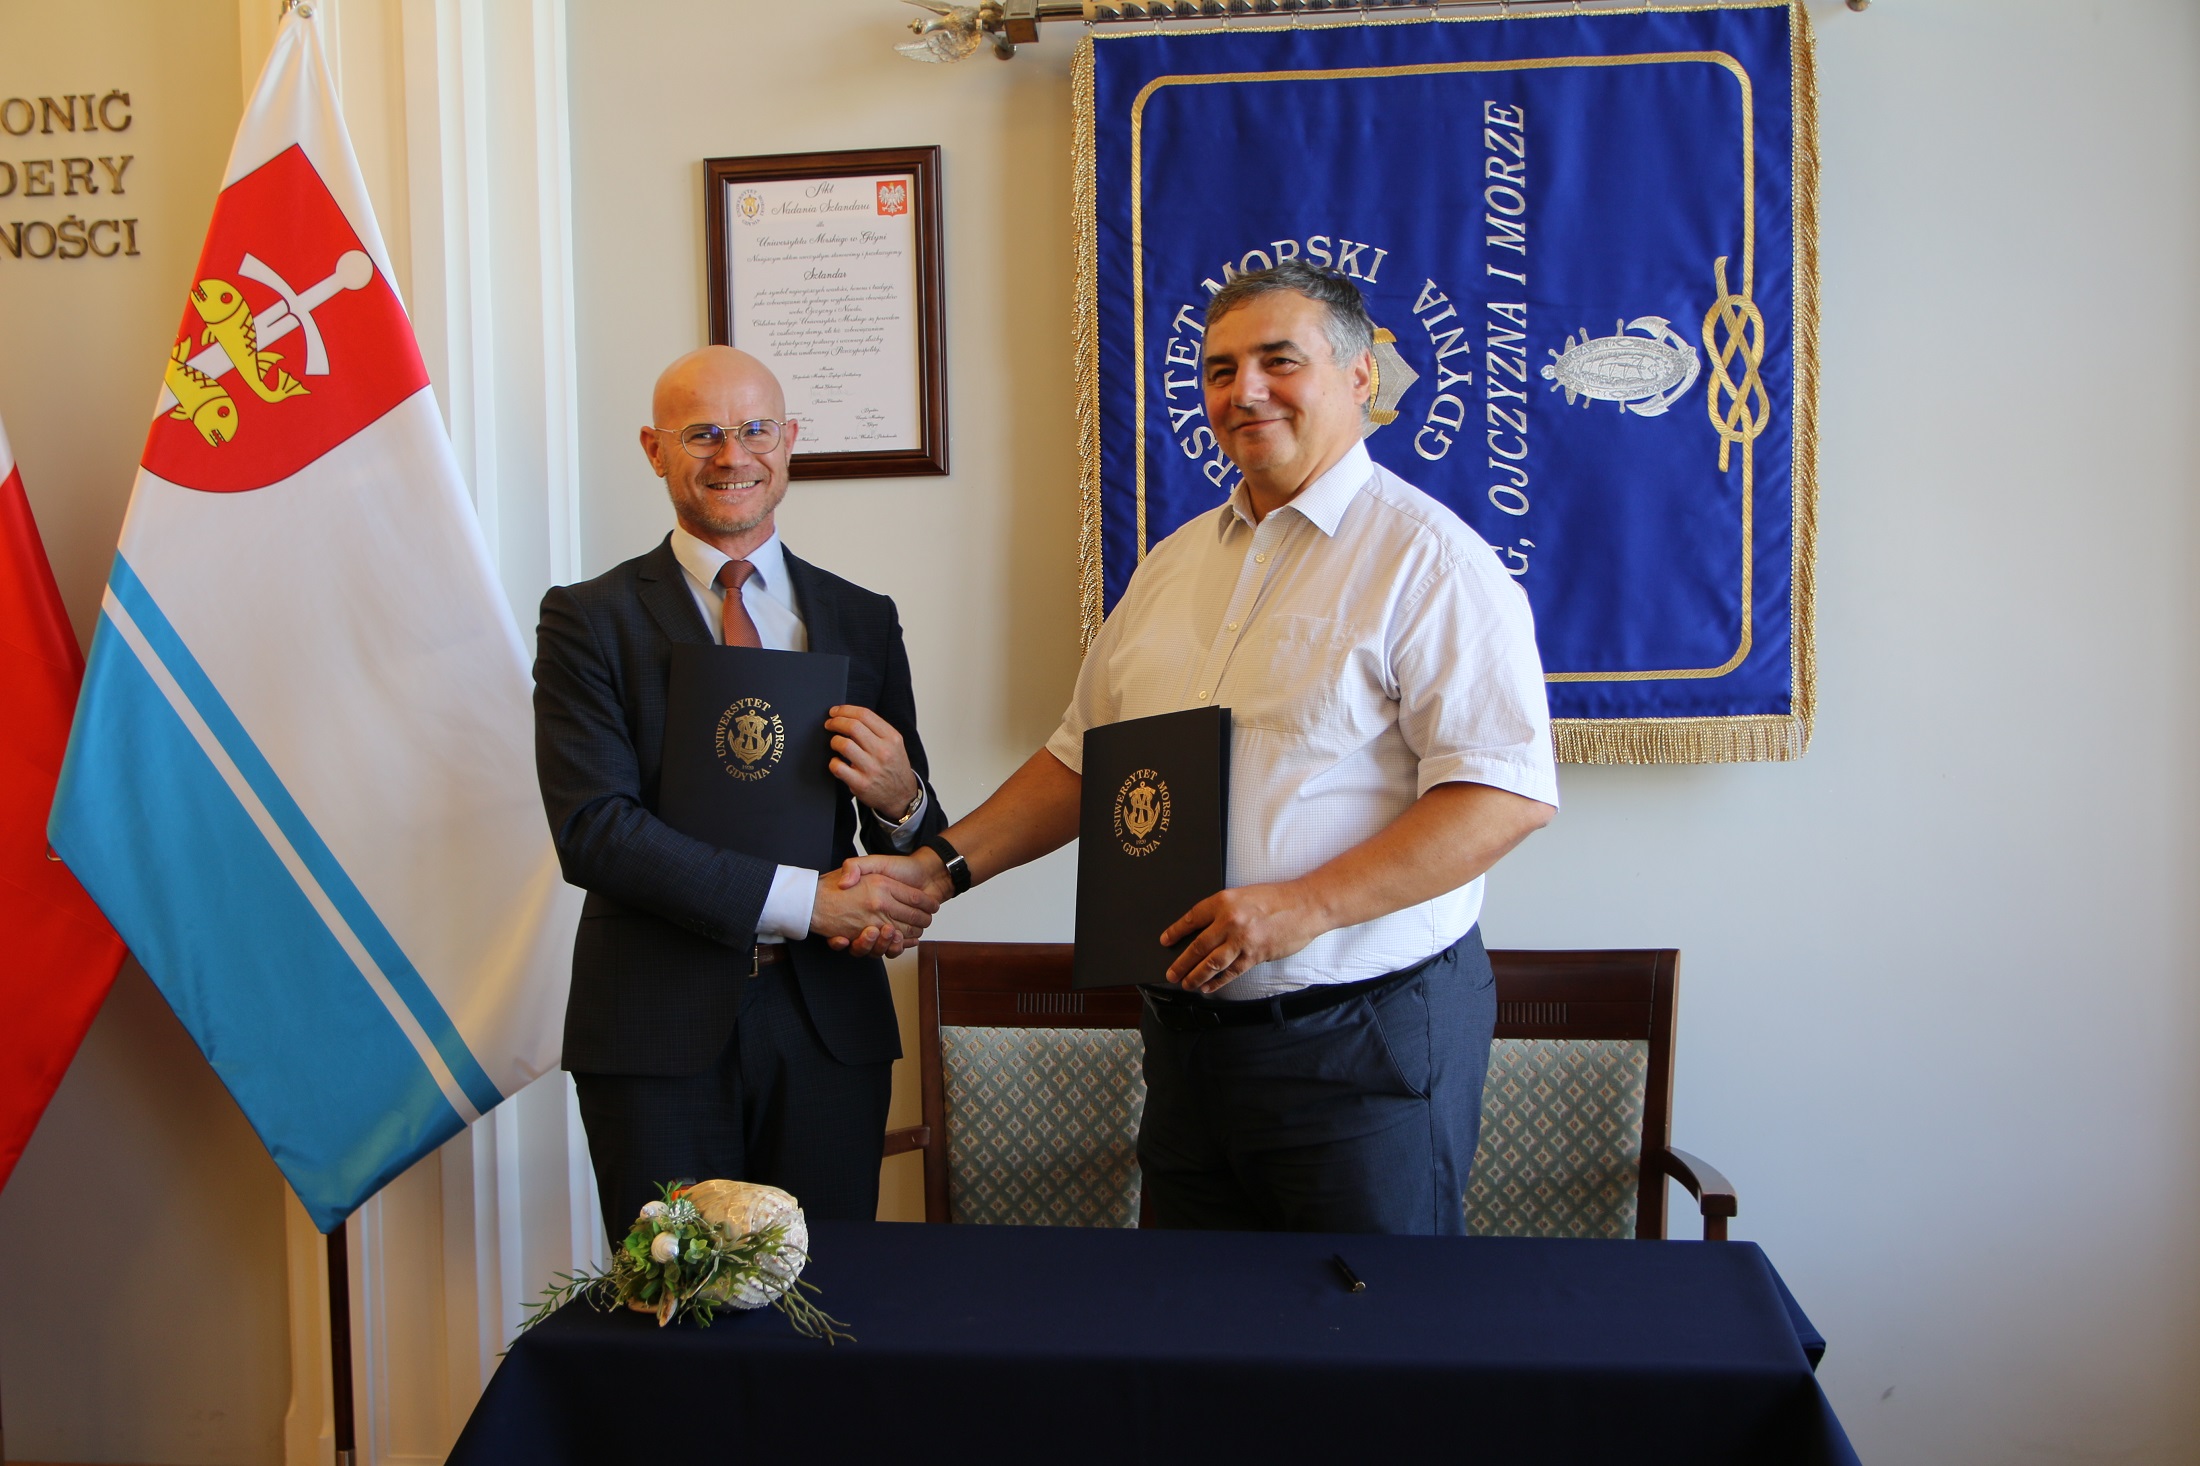 Centrum Sportu, Uniwersytet Morski w Gdyni, podpisanie umowy